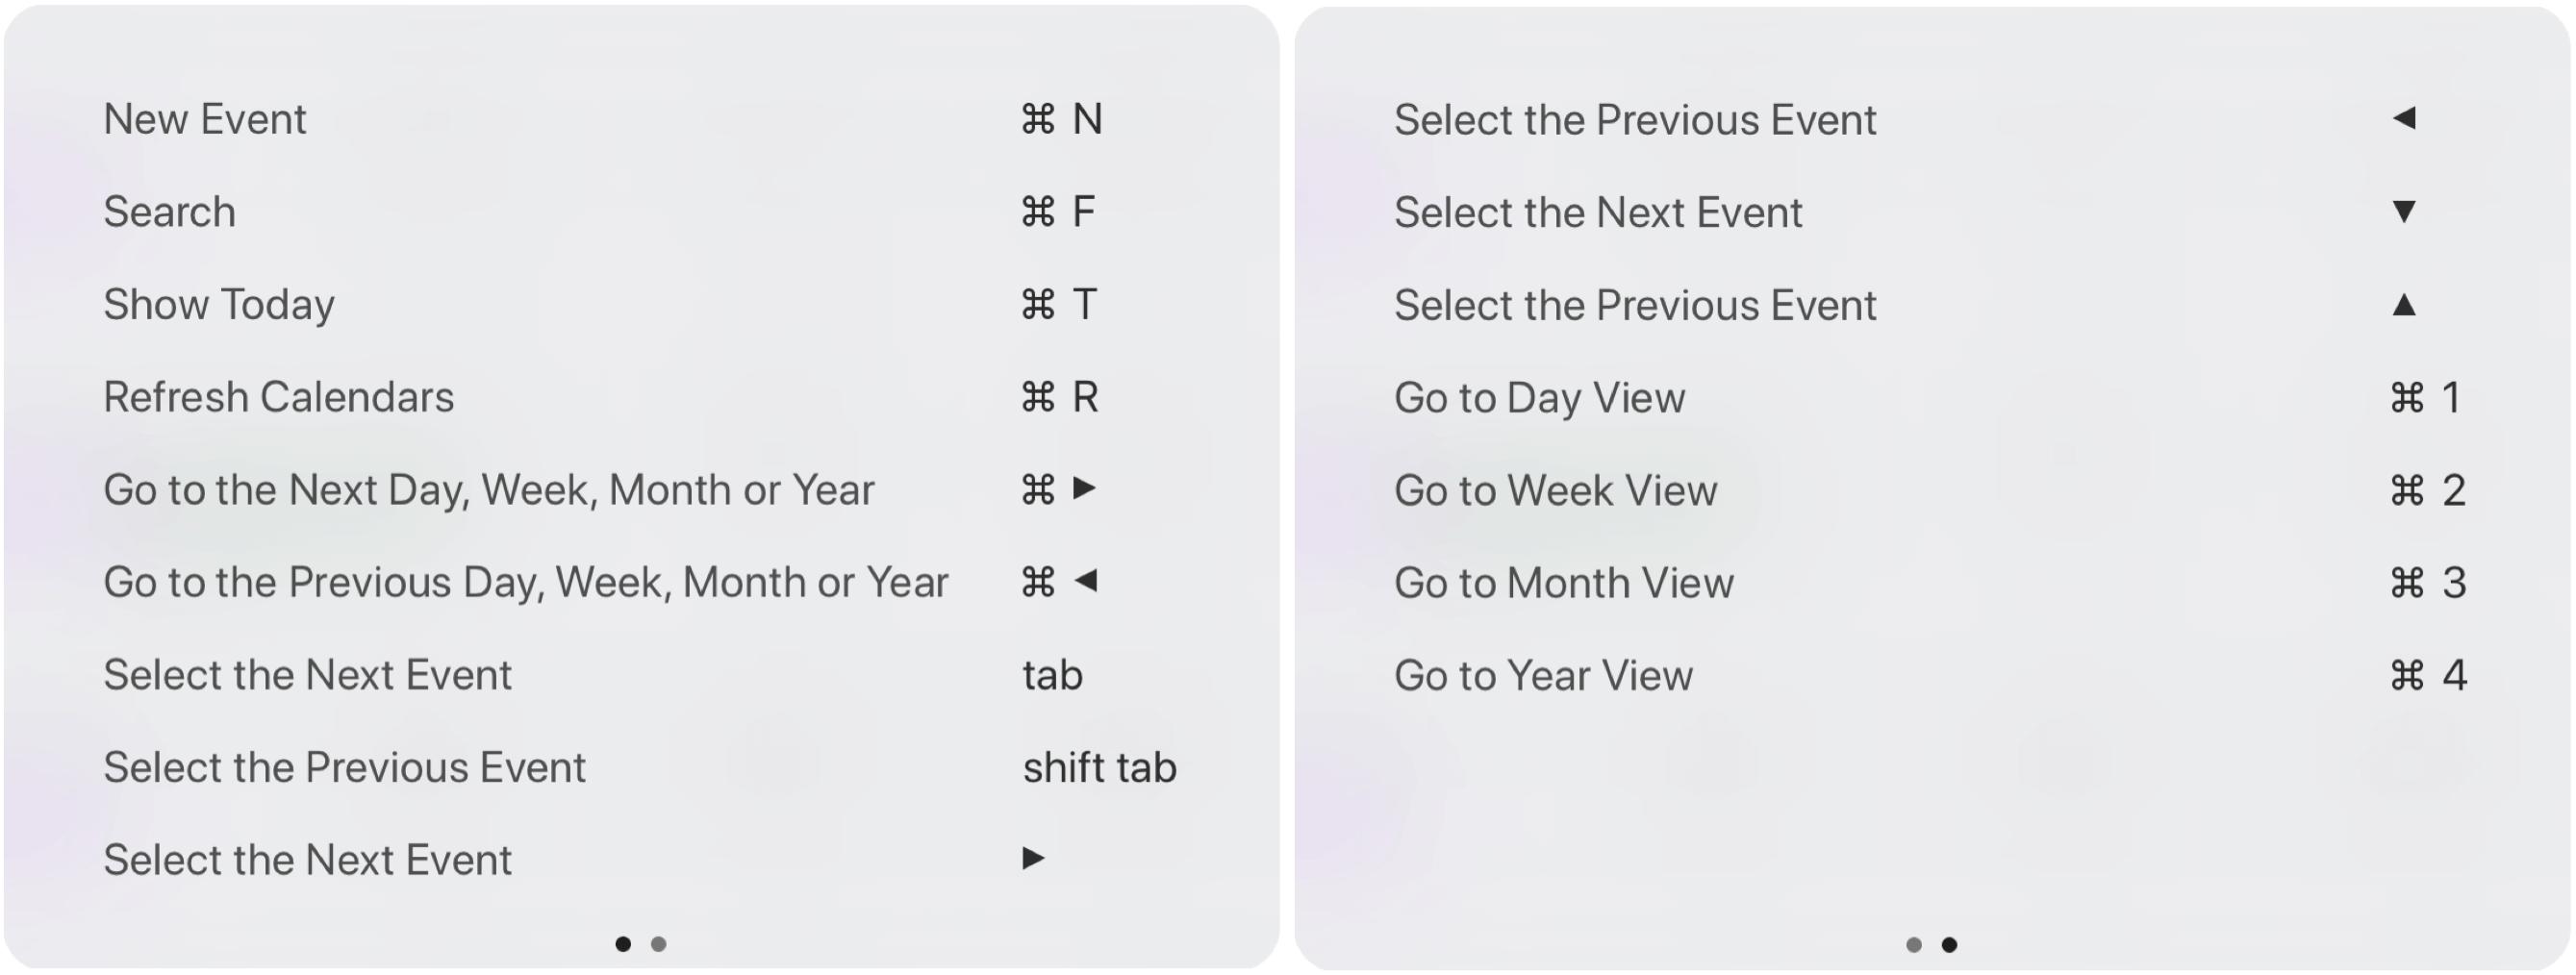 iPad Keyboard Tips and Smart Keyboard Shortcuts